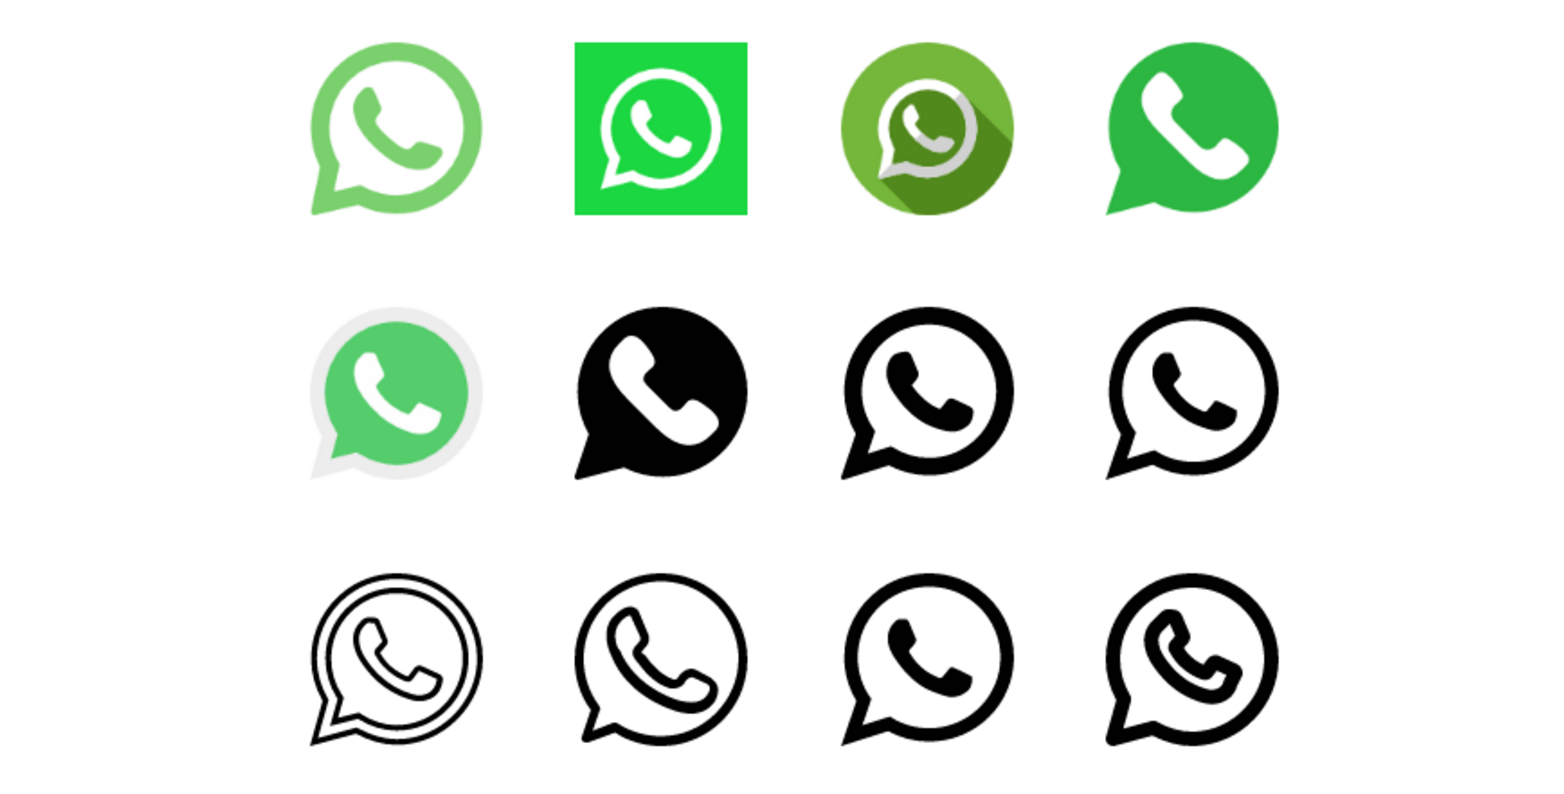 دانلود ۱۲ عدد لوگو واتساپ با طرح های مختلف png و رایگان